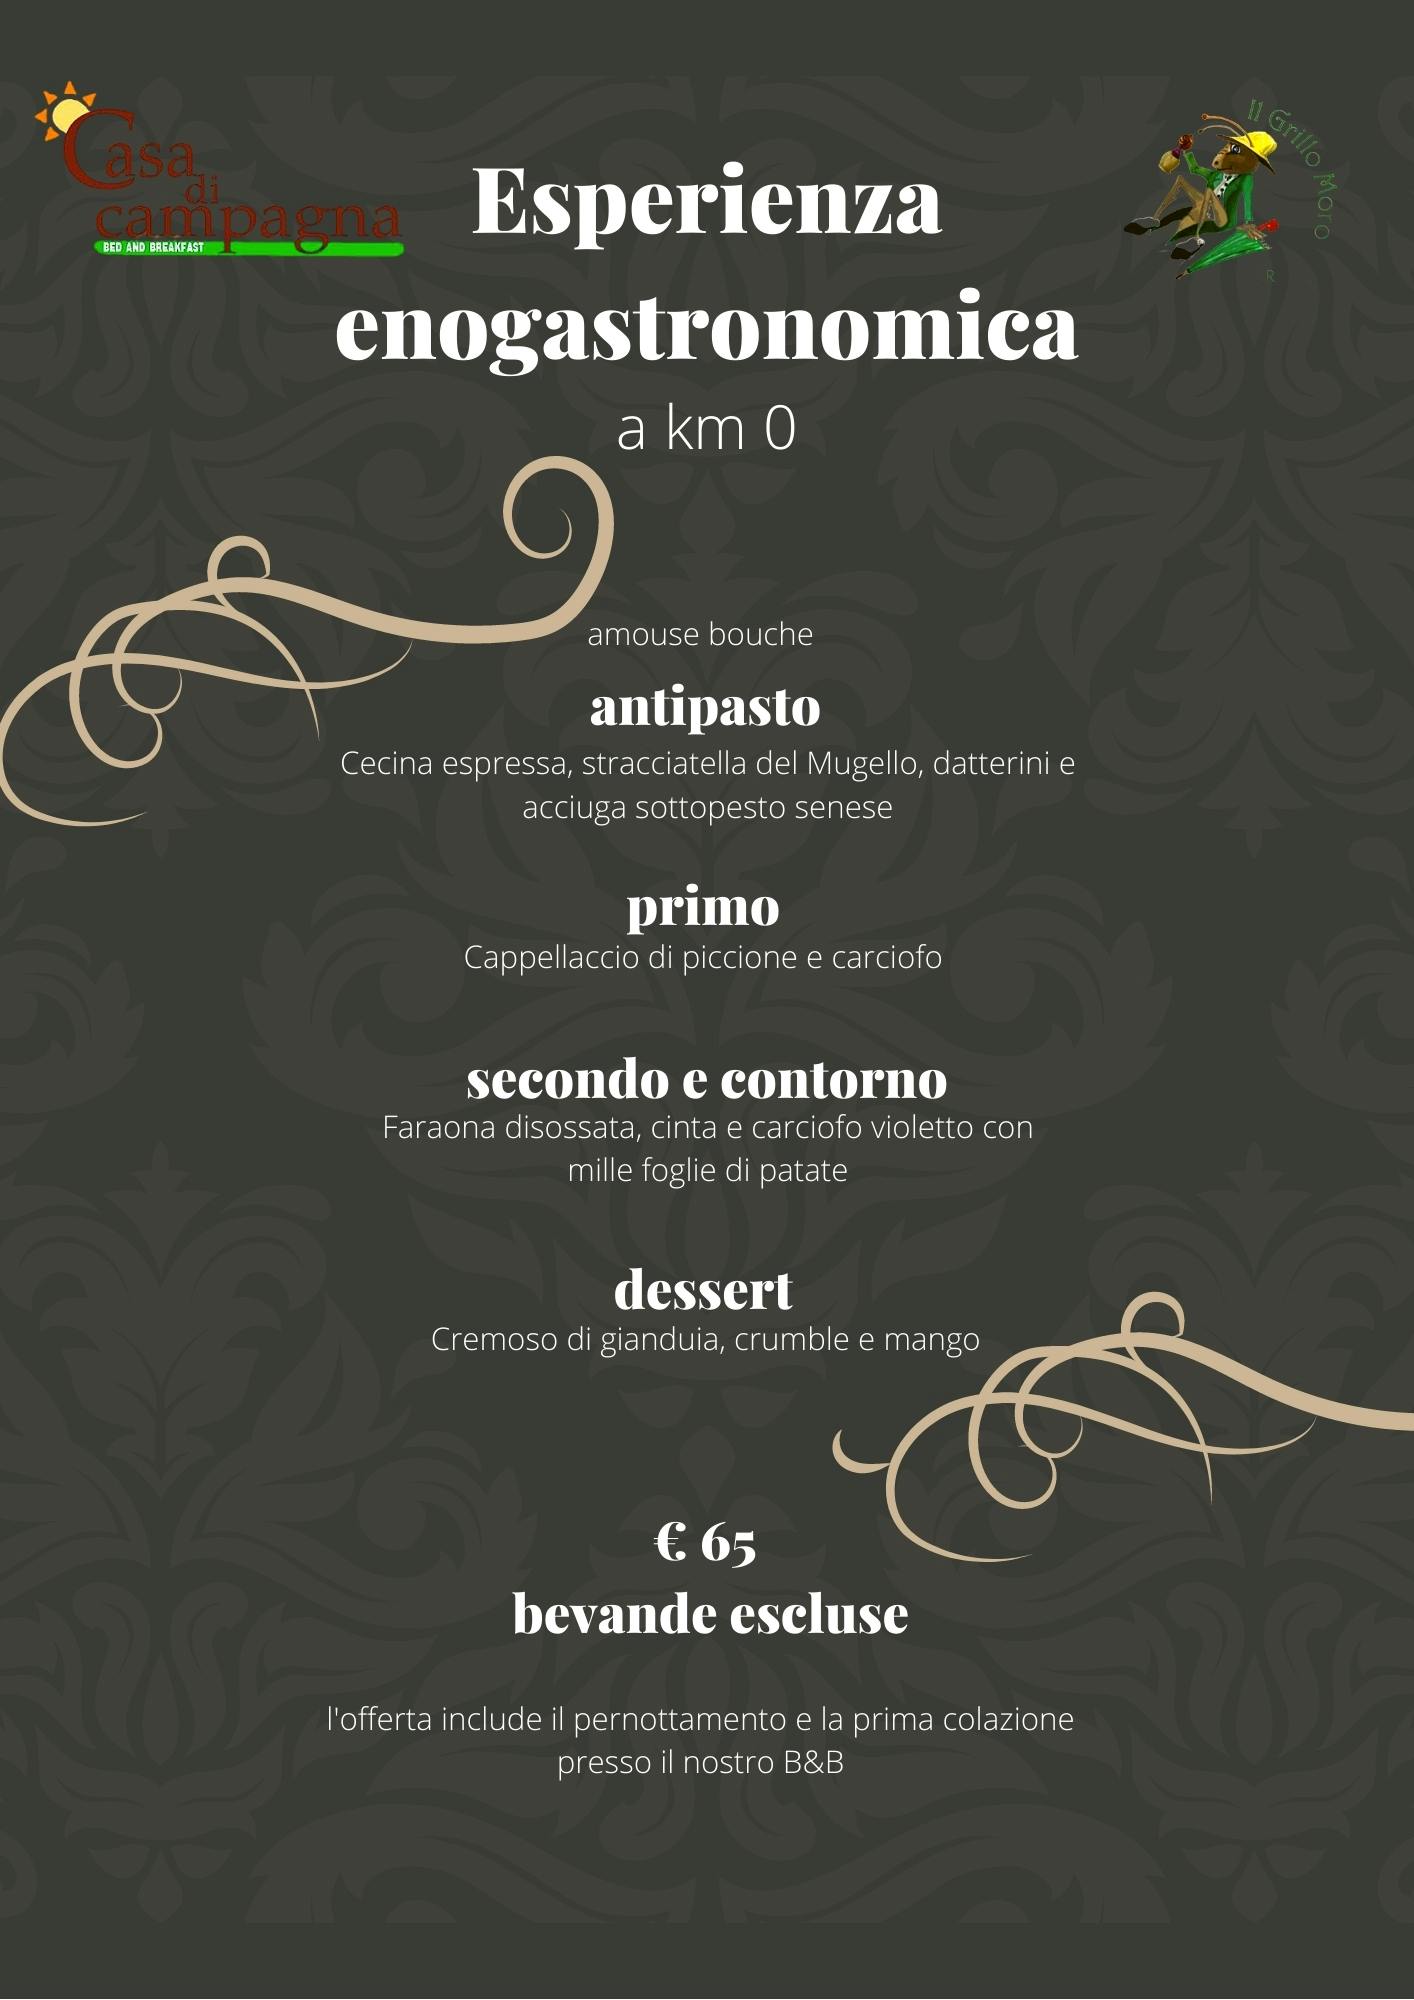 menu degustazione 65 €